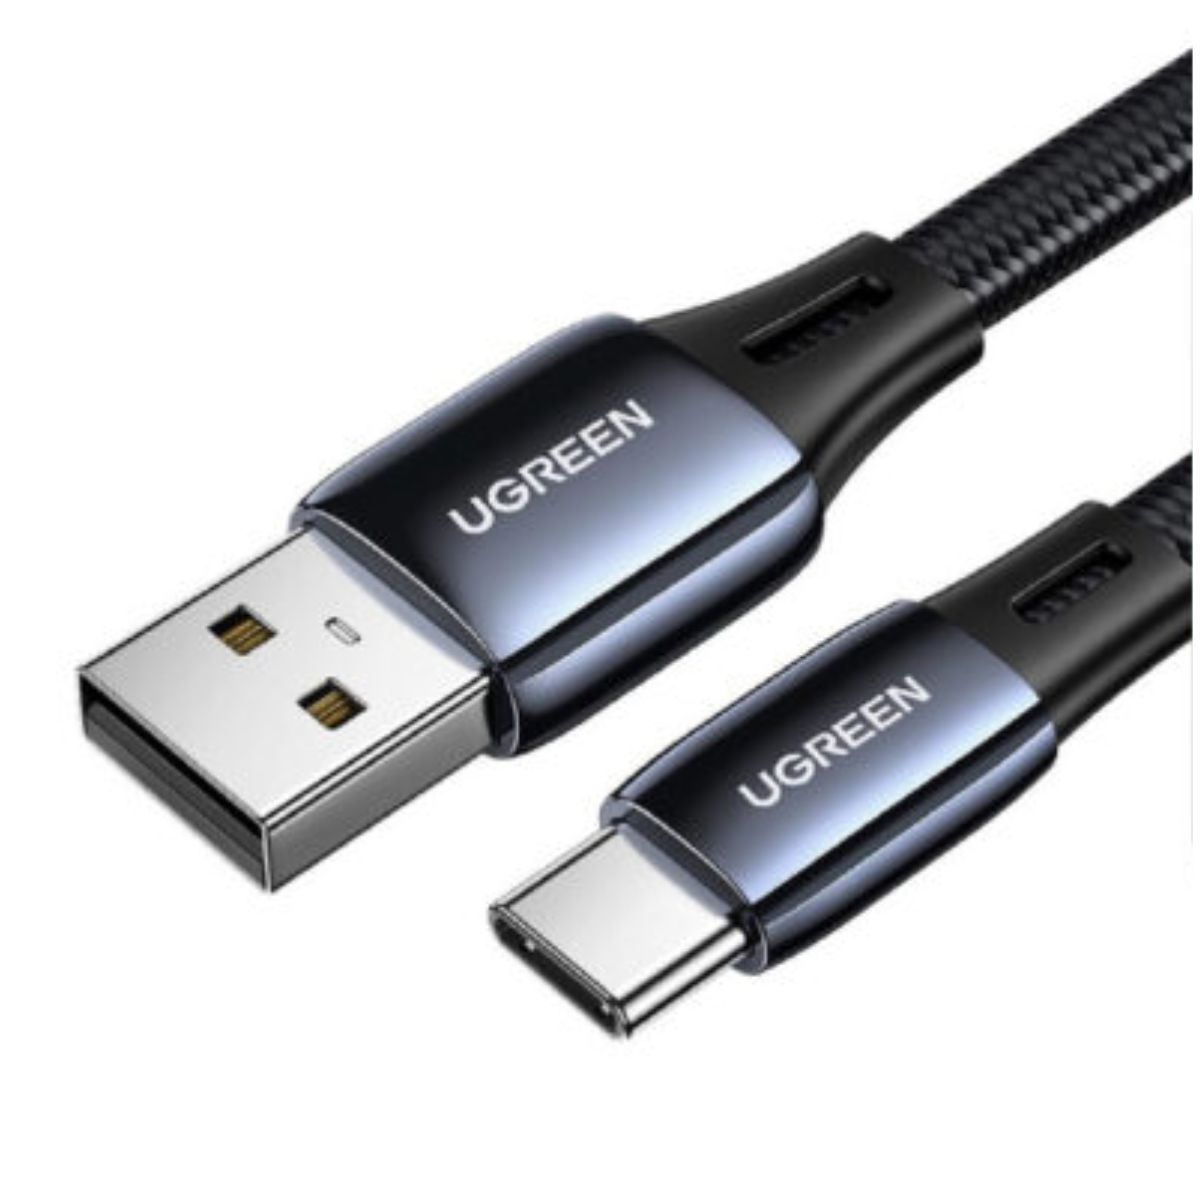 Cáp sạc nhanh USB Type C Ugreen 70625 US330 chiều dài 1m, 4 lớp bảo vệ, công suất tối đa 18W